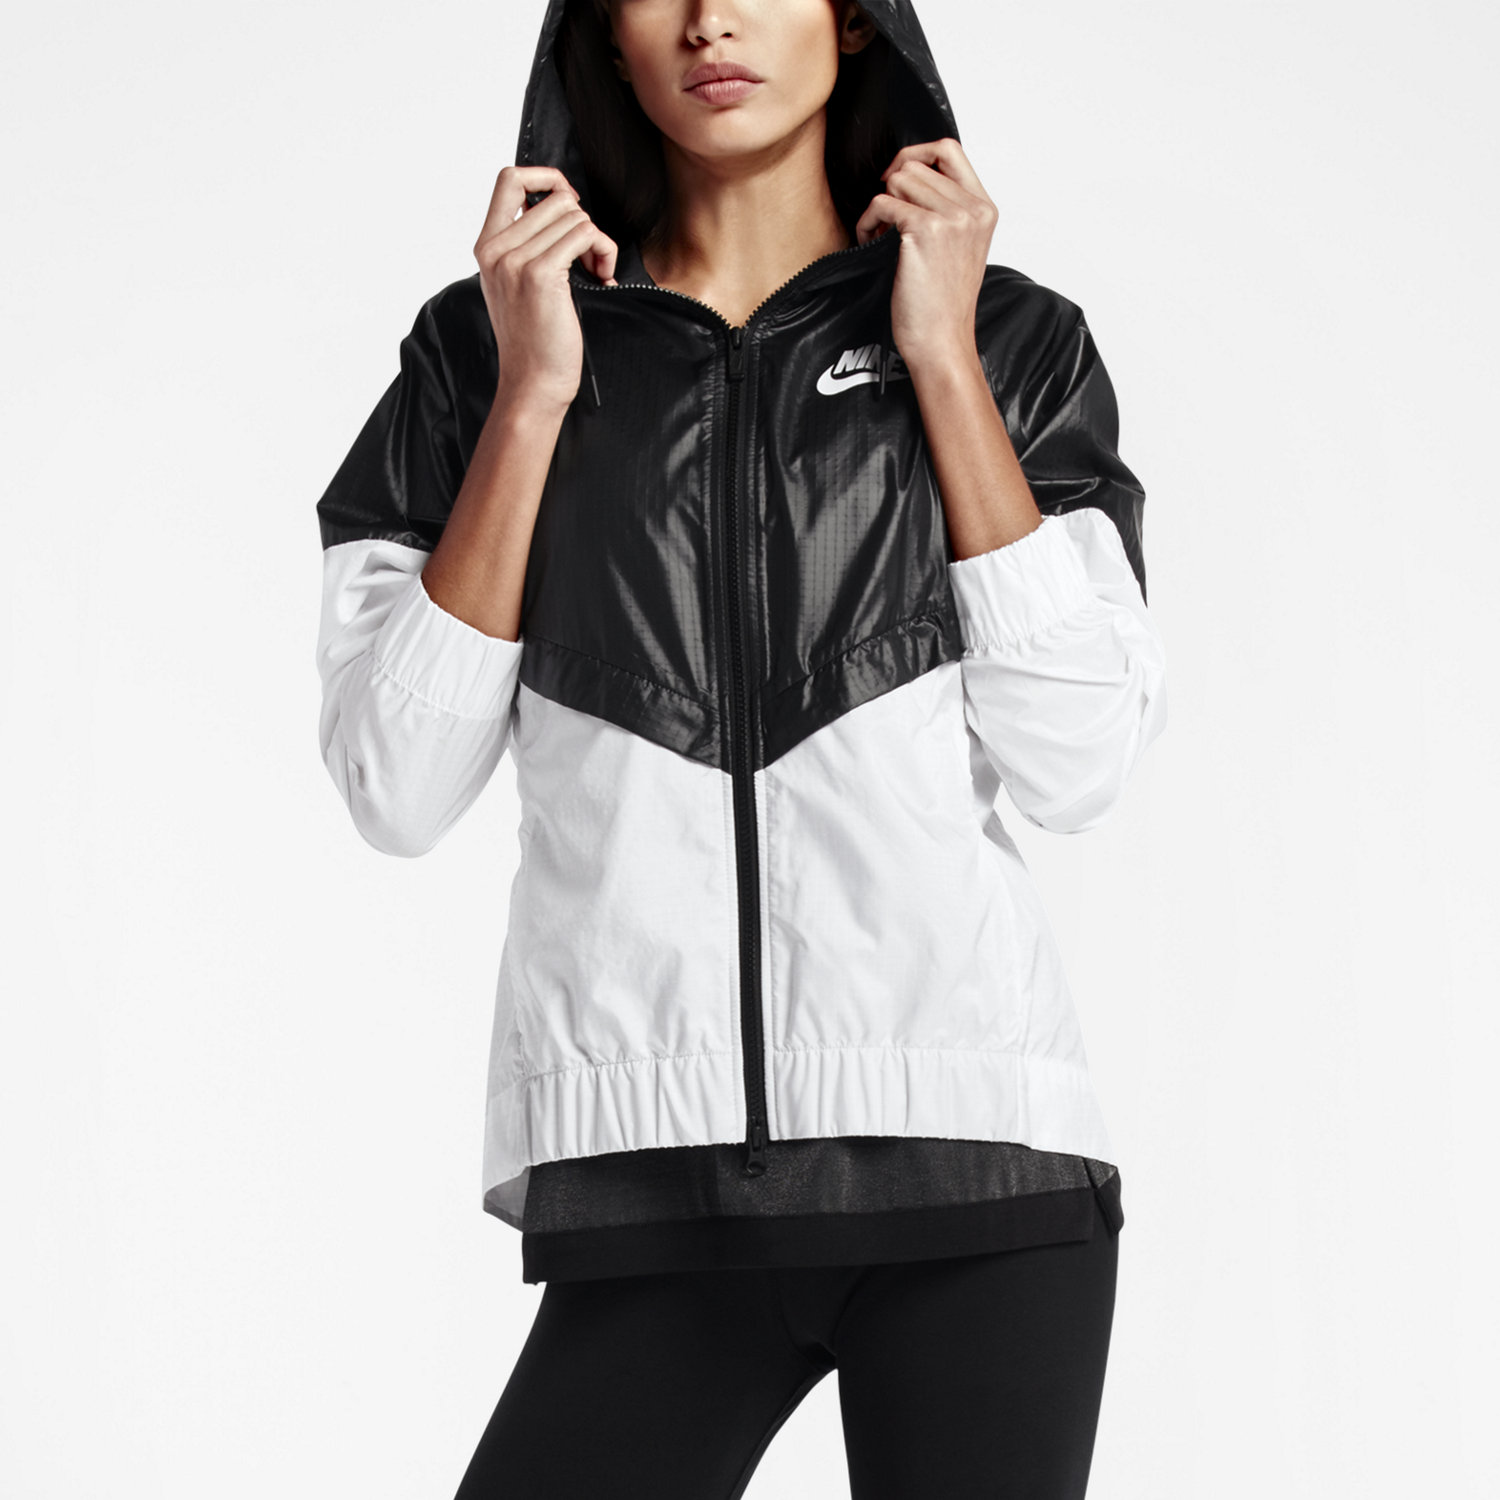 Women's Jackets, Windbreakers & Vests. Nike.com